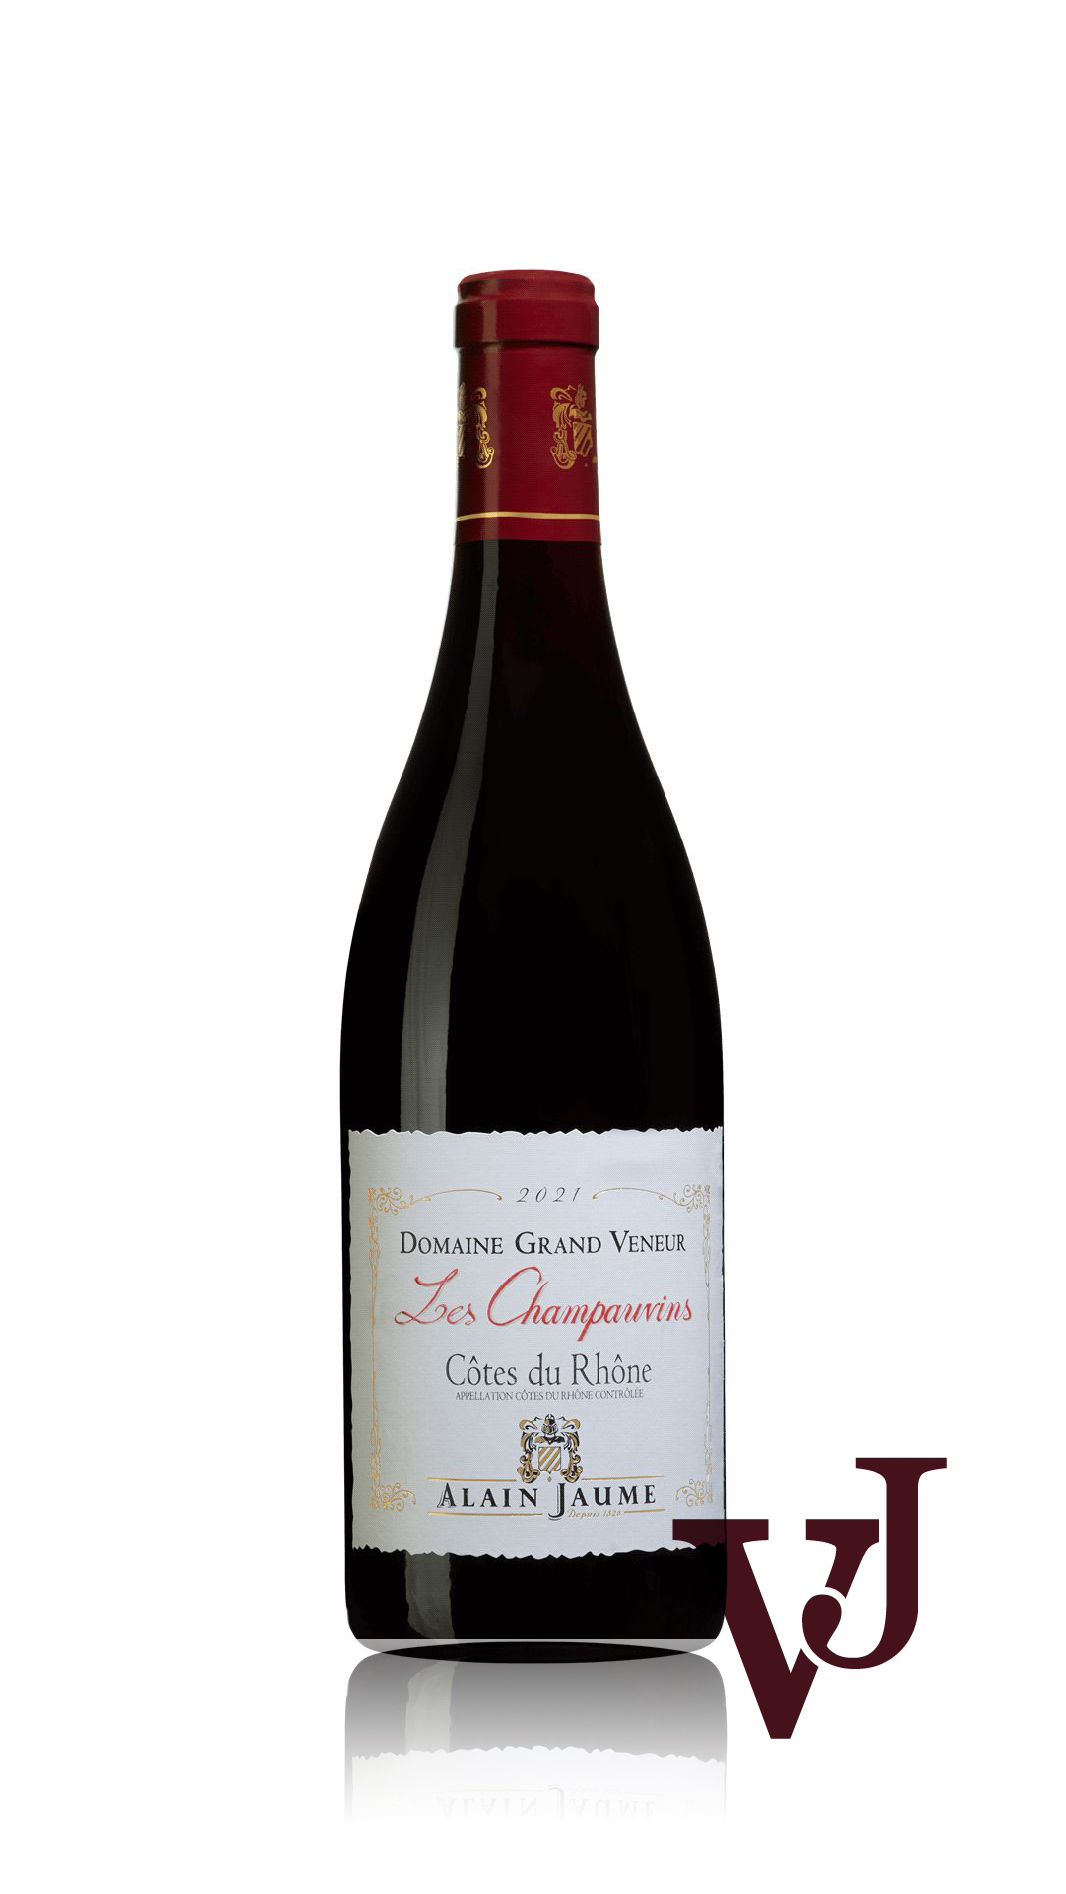 Rött vin - Domaine Grand Veneur Les Champauvins 2021 artikel nummer 9320401 från producenten Alain Jaume från Frankrike